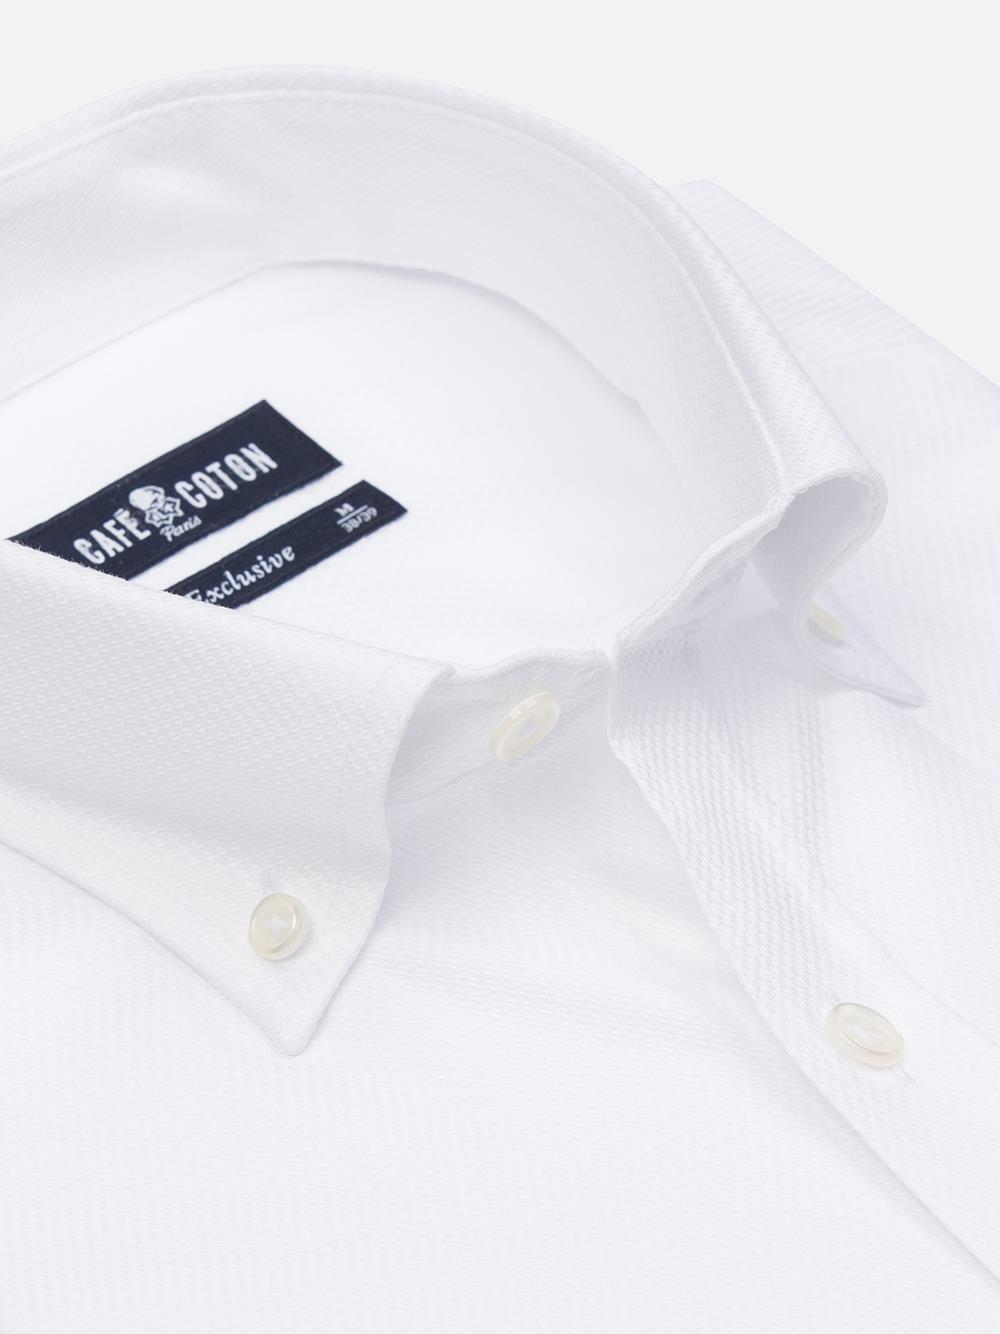 Camicia slim fit Brien in twill bianco - Colletto abbottonato